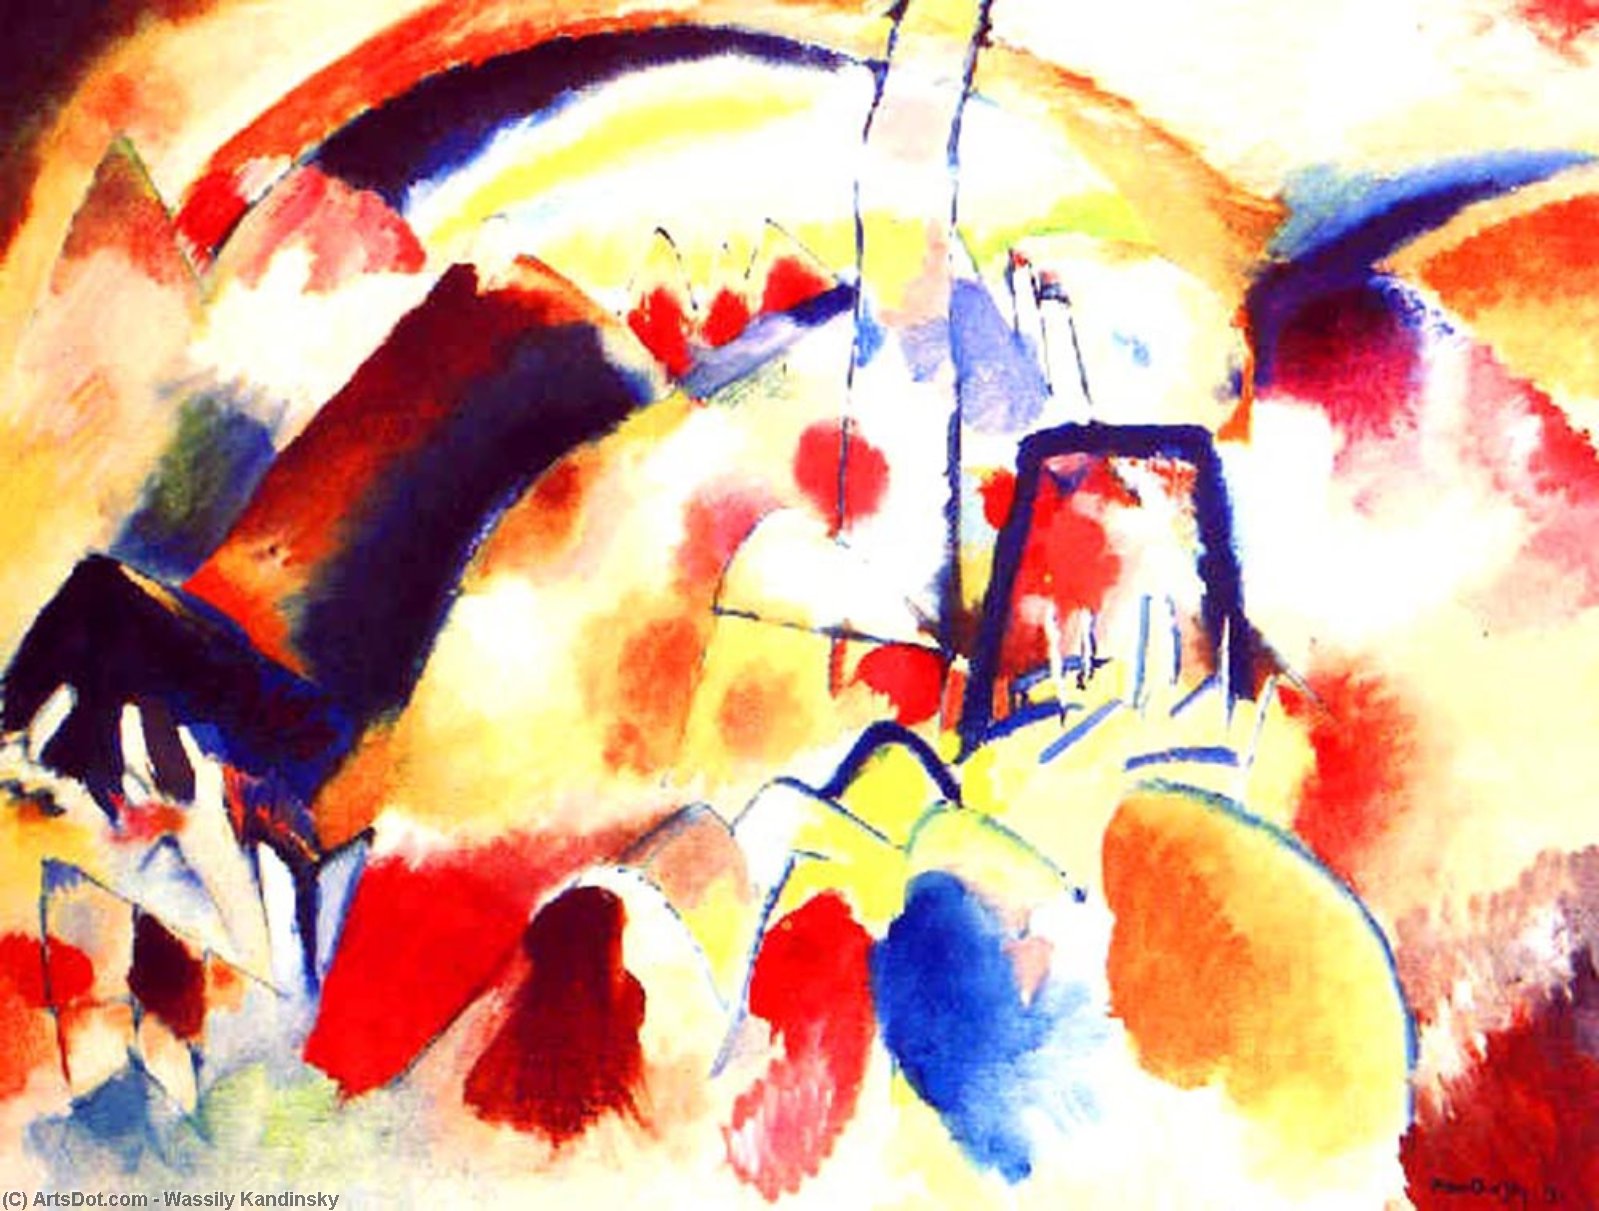 Wikioo.org - Bách khoa toàn thư về mỹ thuật - Vẽ tranh, Tác phẩm nghệ thuật Wassily Kandinsky - Landscape with red spots